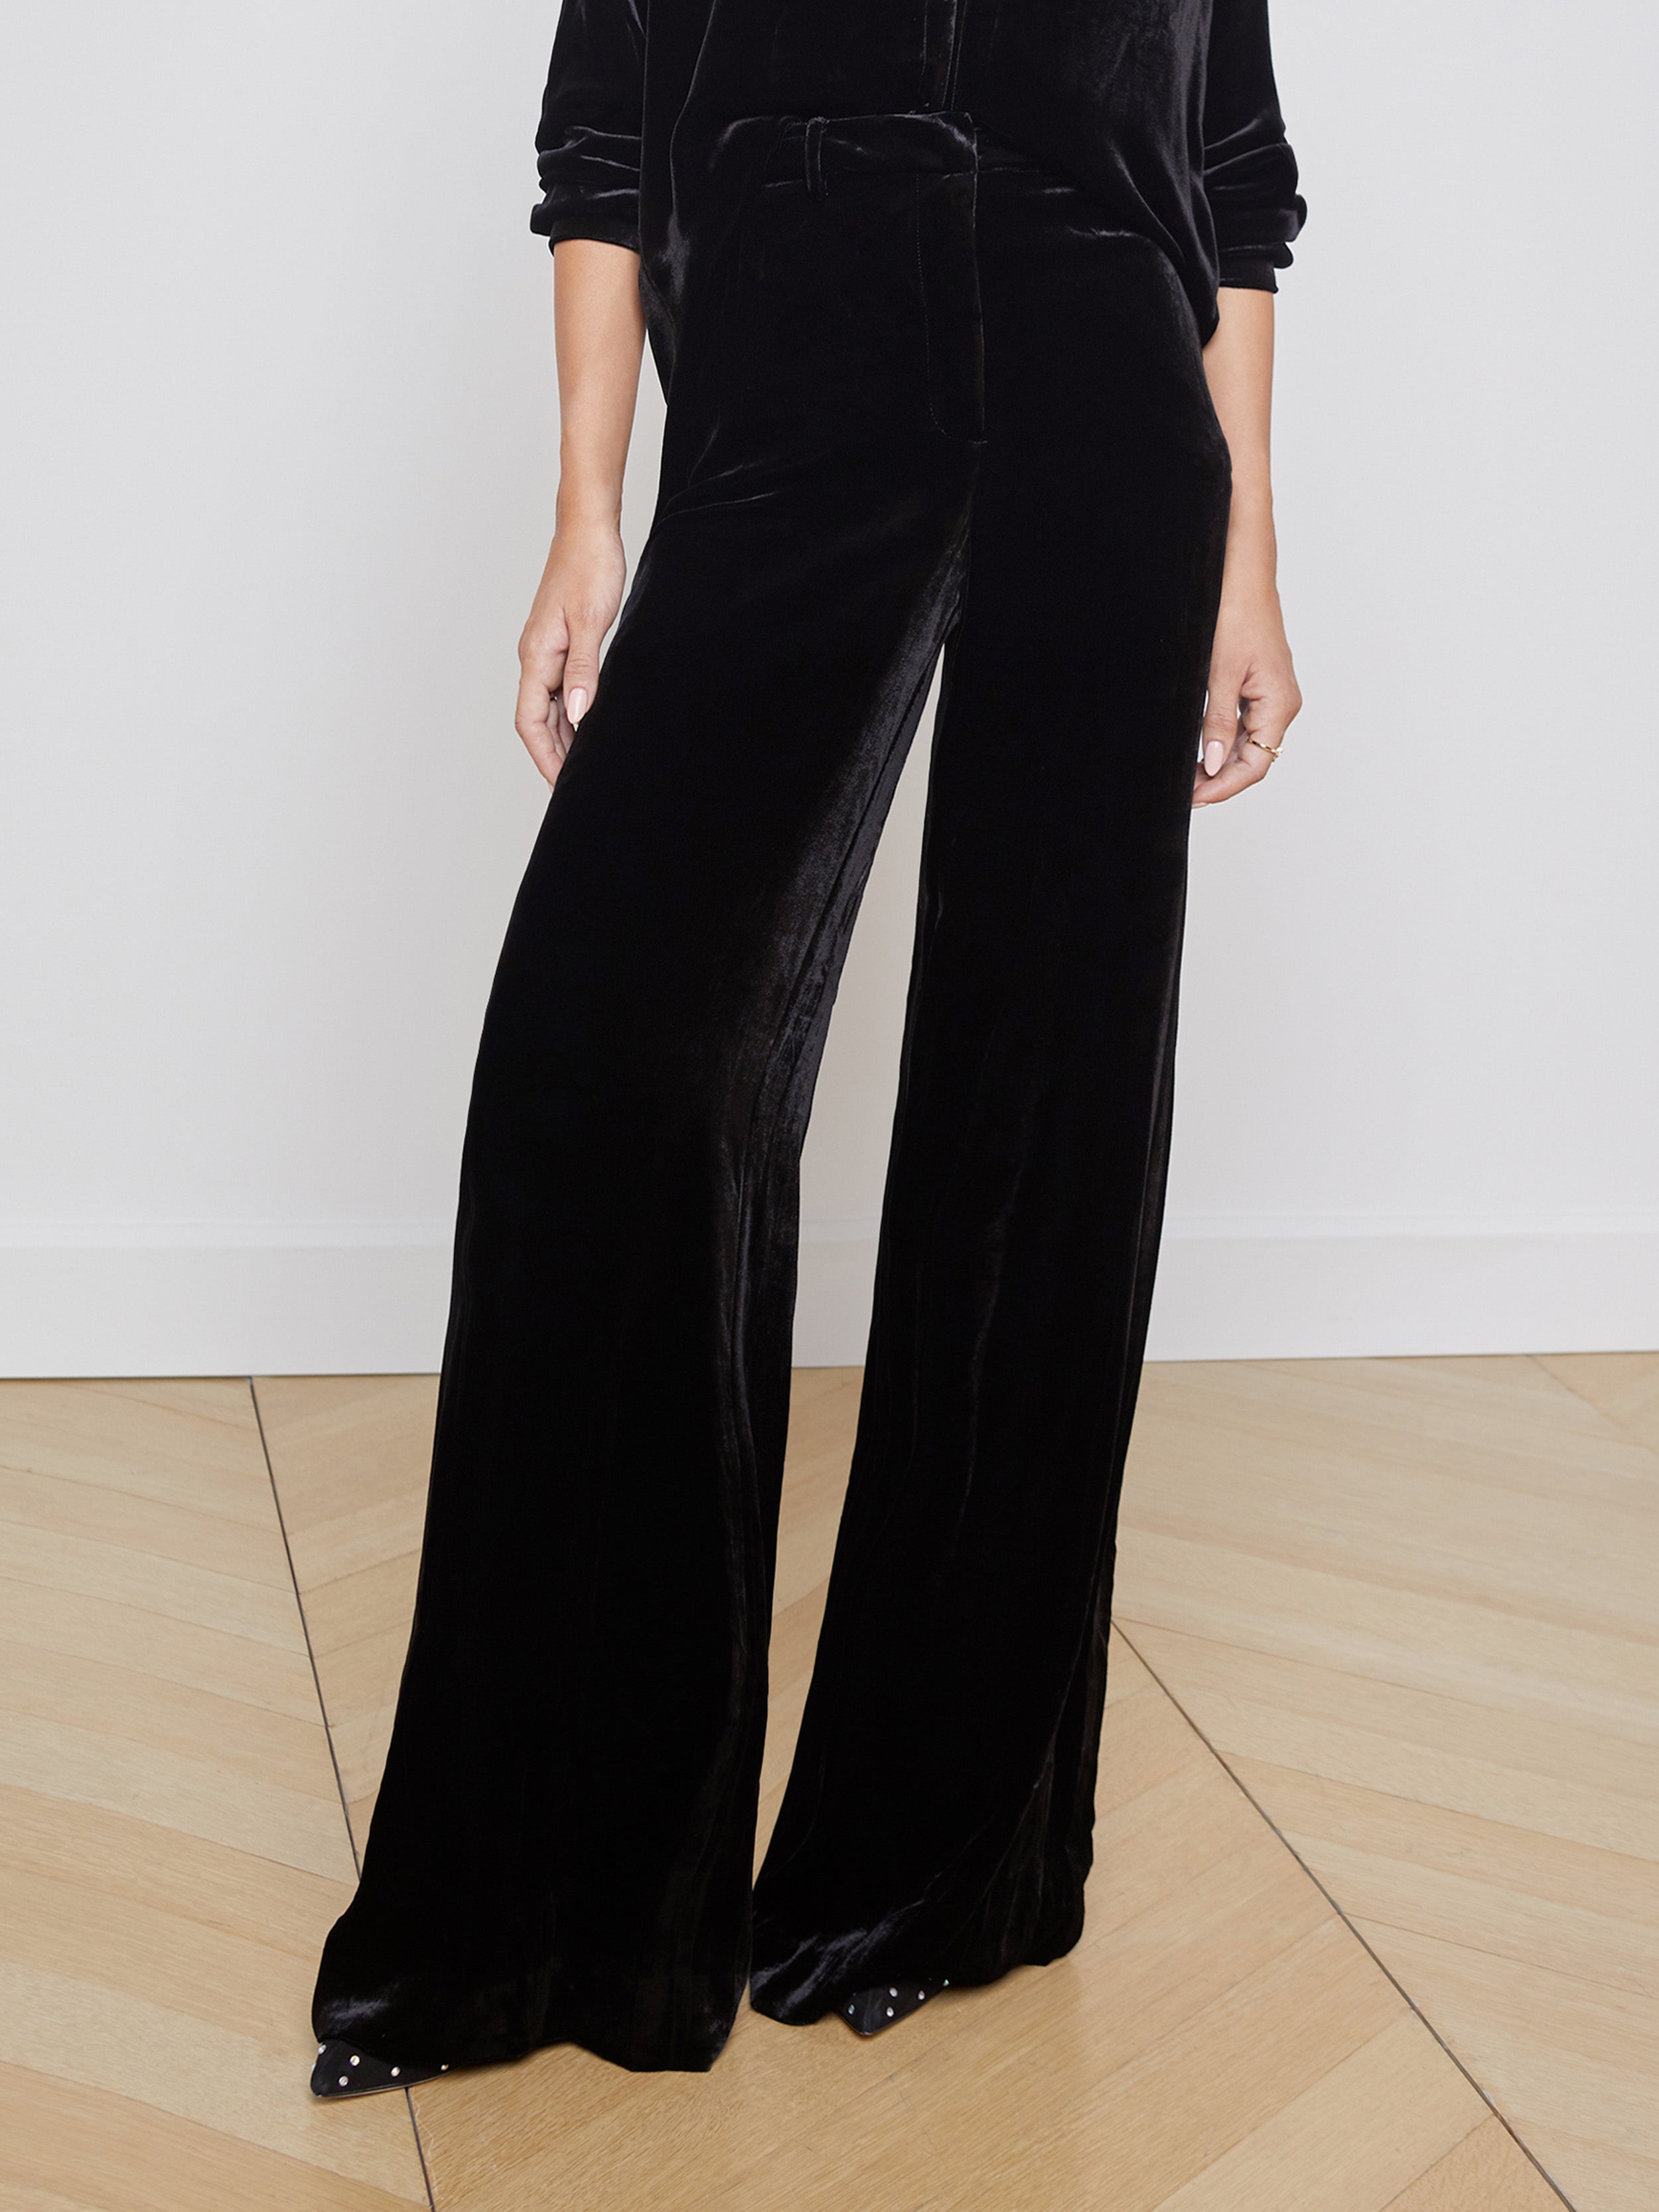 Donna Karan Velvet Side-striped Slim-fit Pants in Black | Lyst